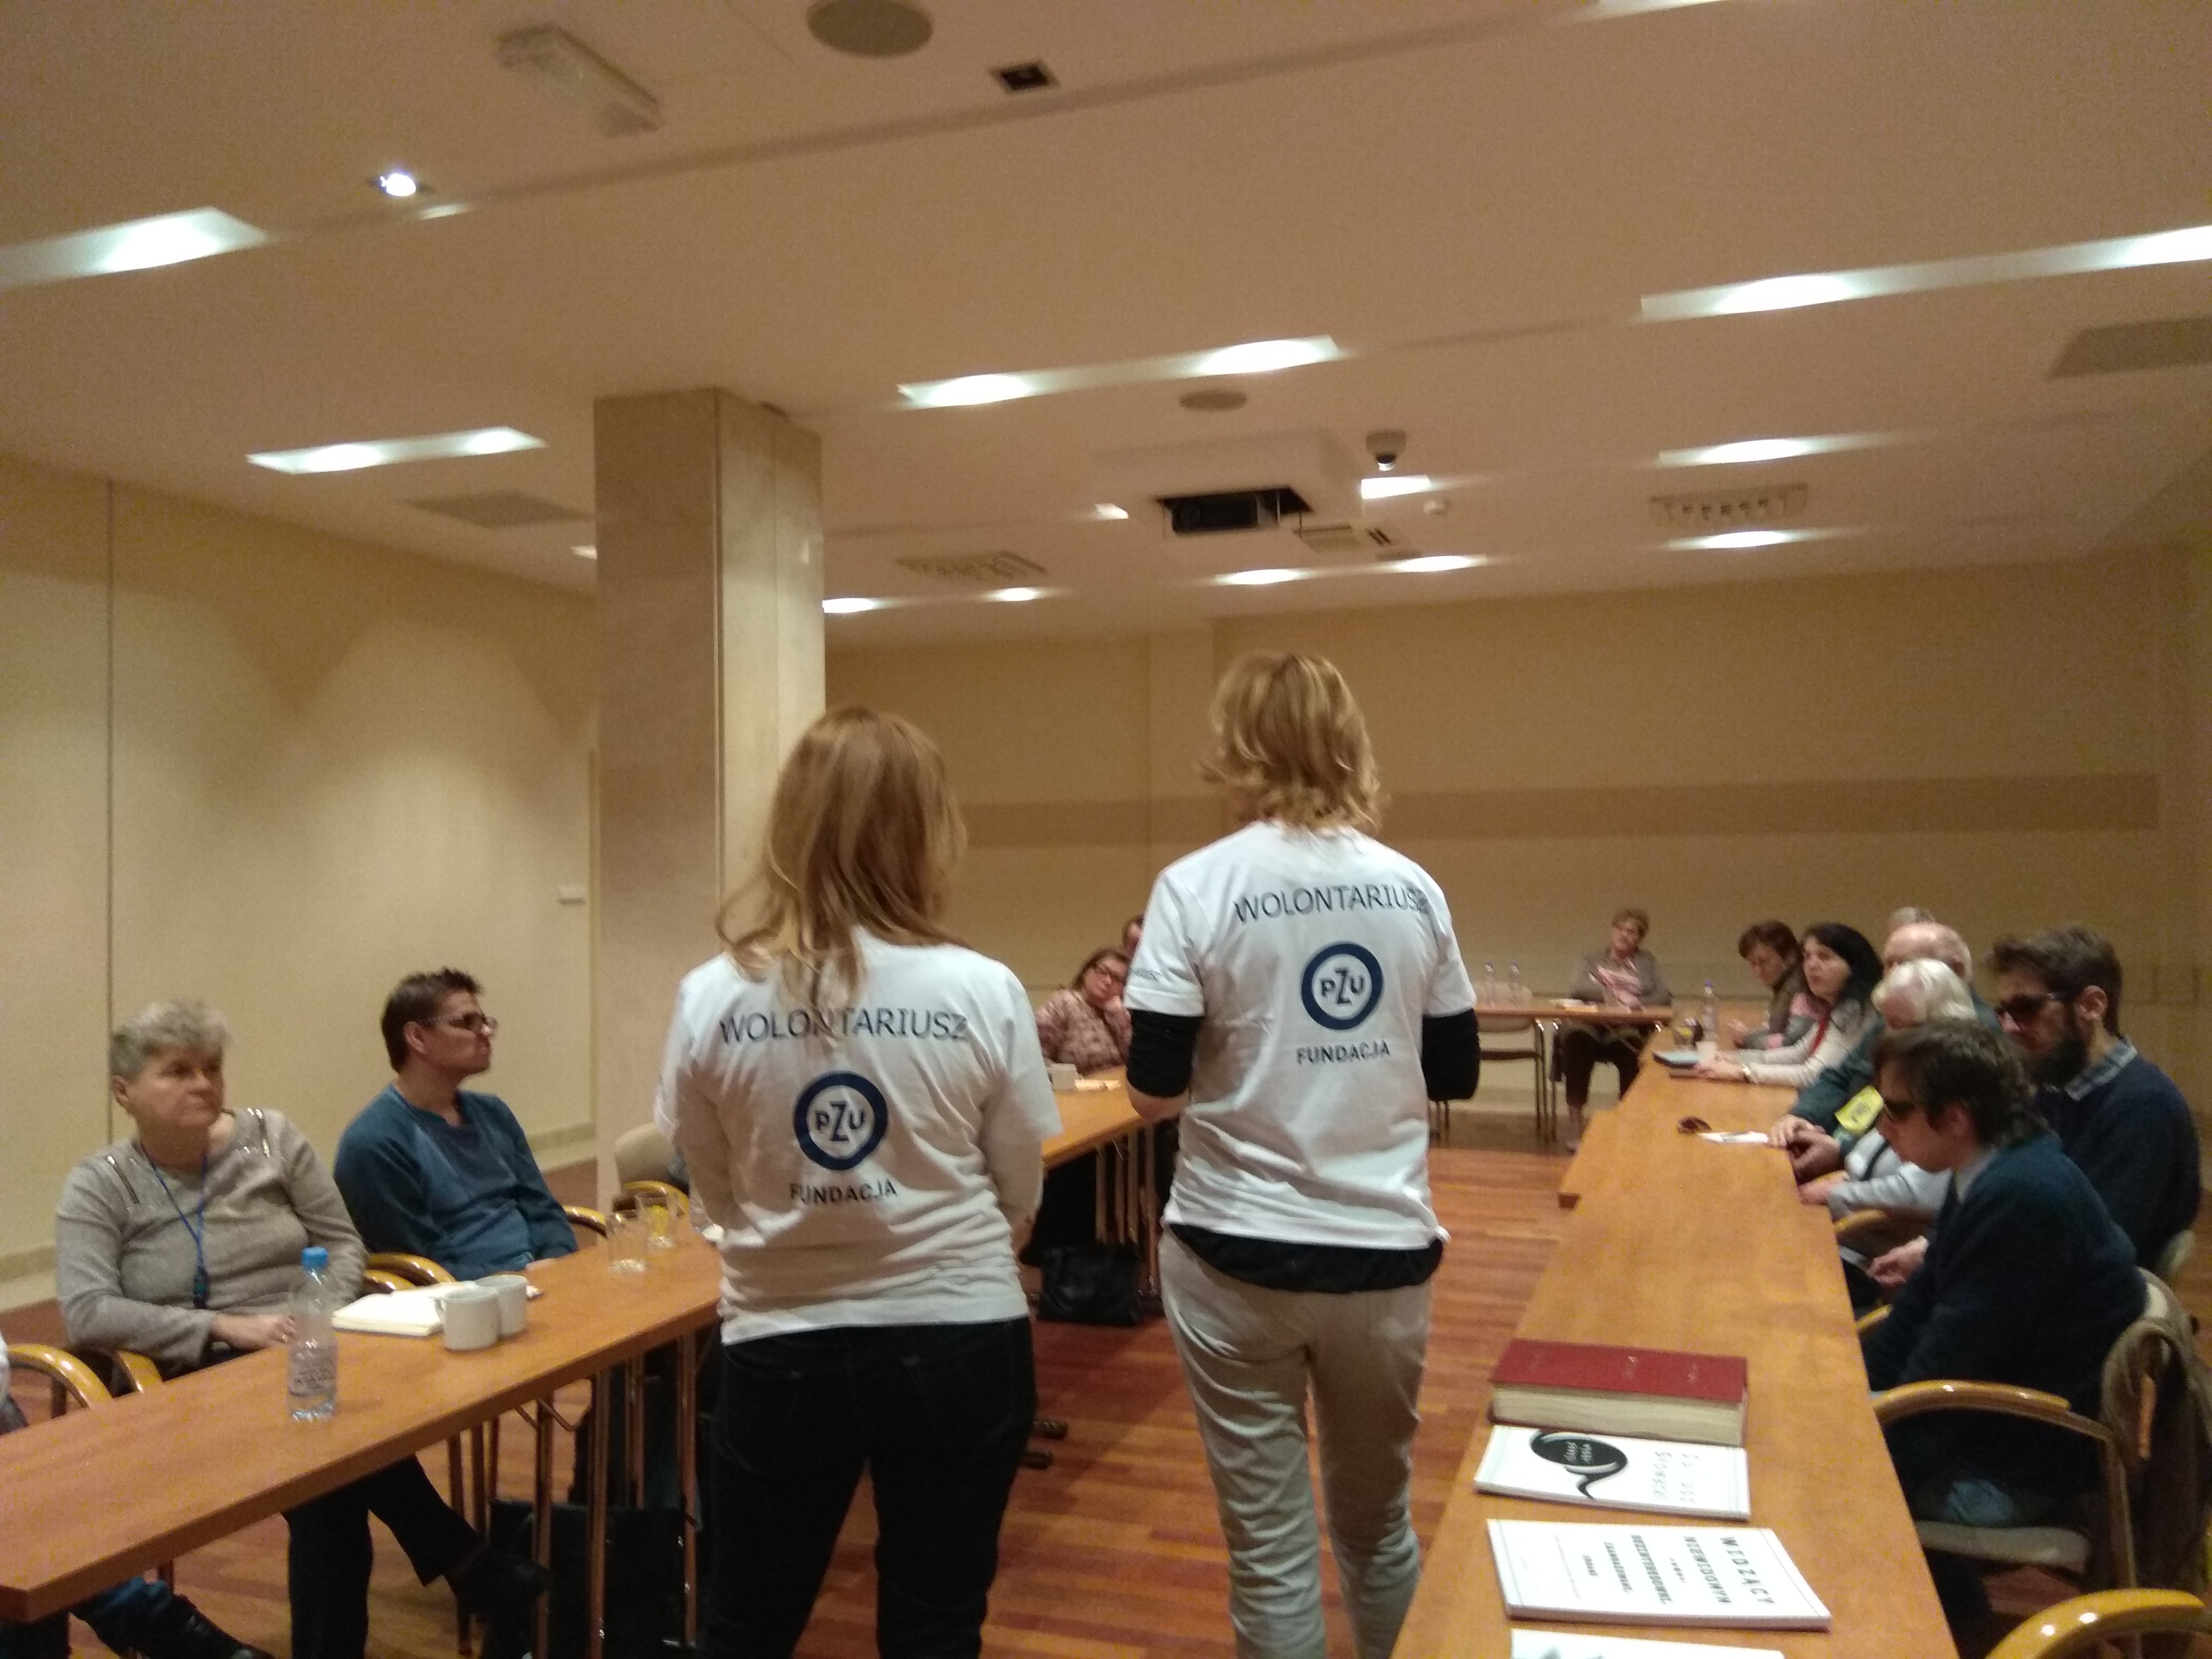 W jasnej przestrzeni sali konferencyjnej widoczni uczestnicy zjazdu siedzący po bokach sali, a w środku między stołami stojące dwie panie, obie blondynki,  w białych koszulkach widziane od tyłu, na koszulkach logo Fundacji PZU, jej nazwa i napis Wolontariusz.